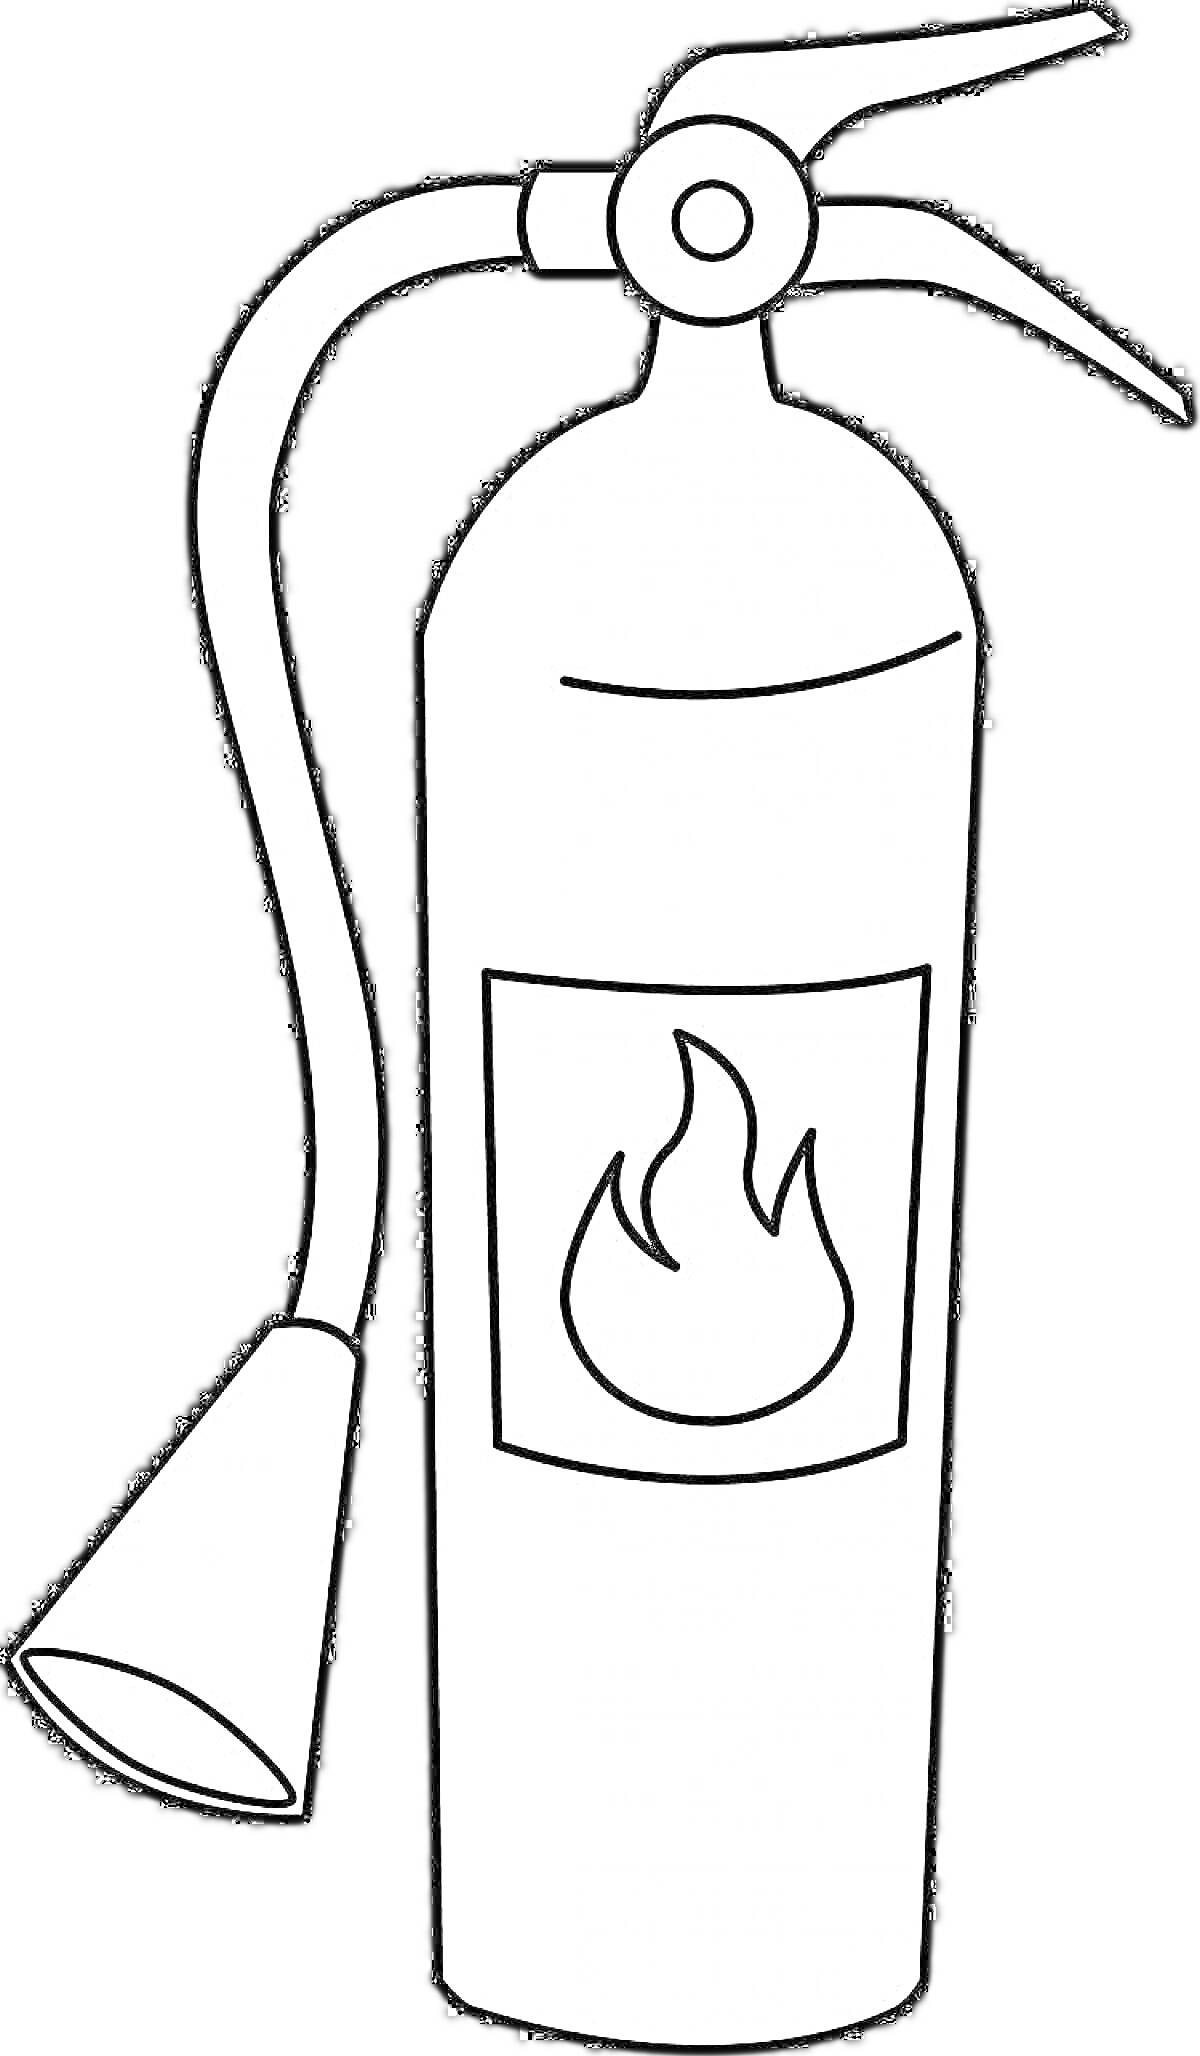 Раскраска Огнетушитель с ручкой, соплом и символом пламени